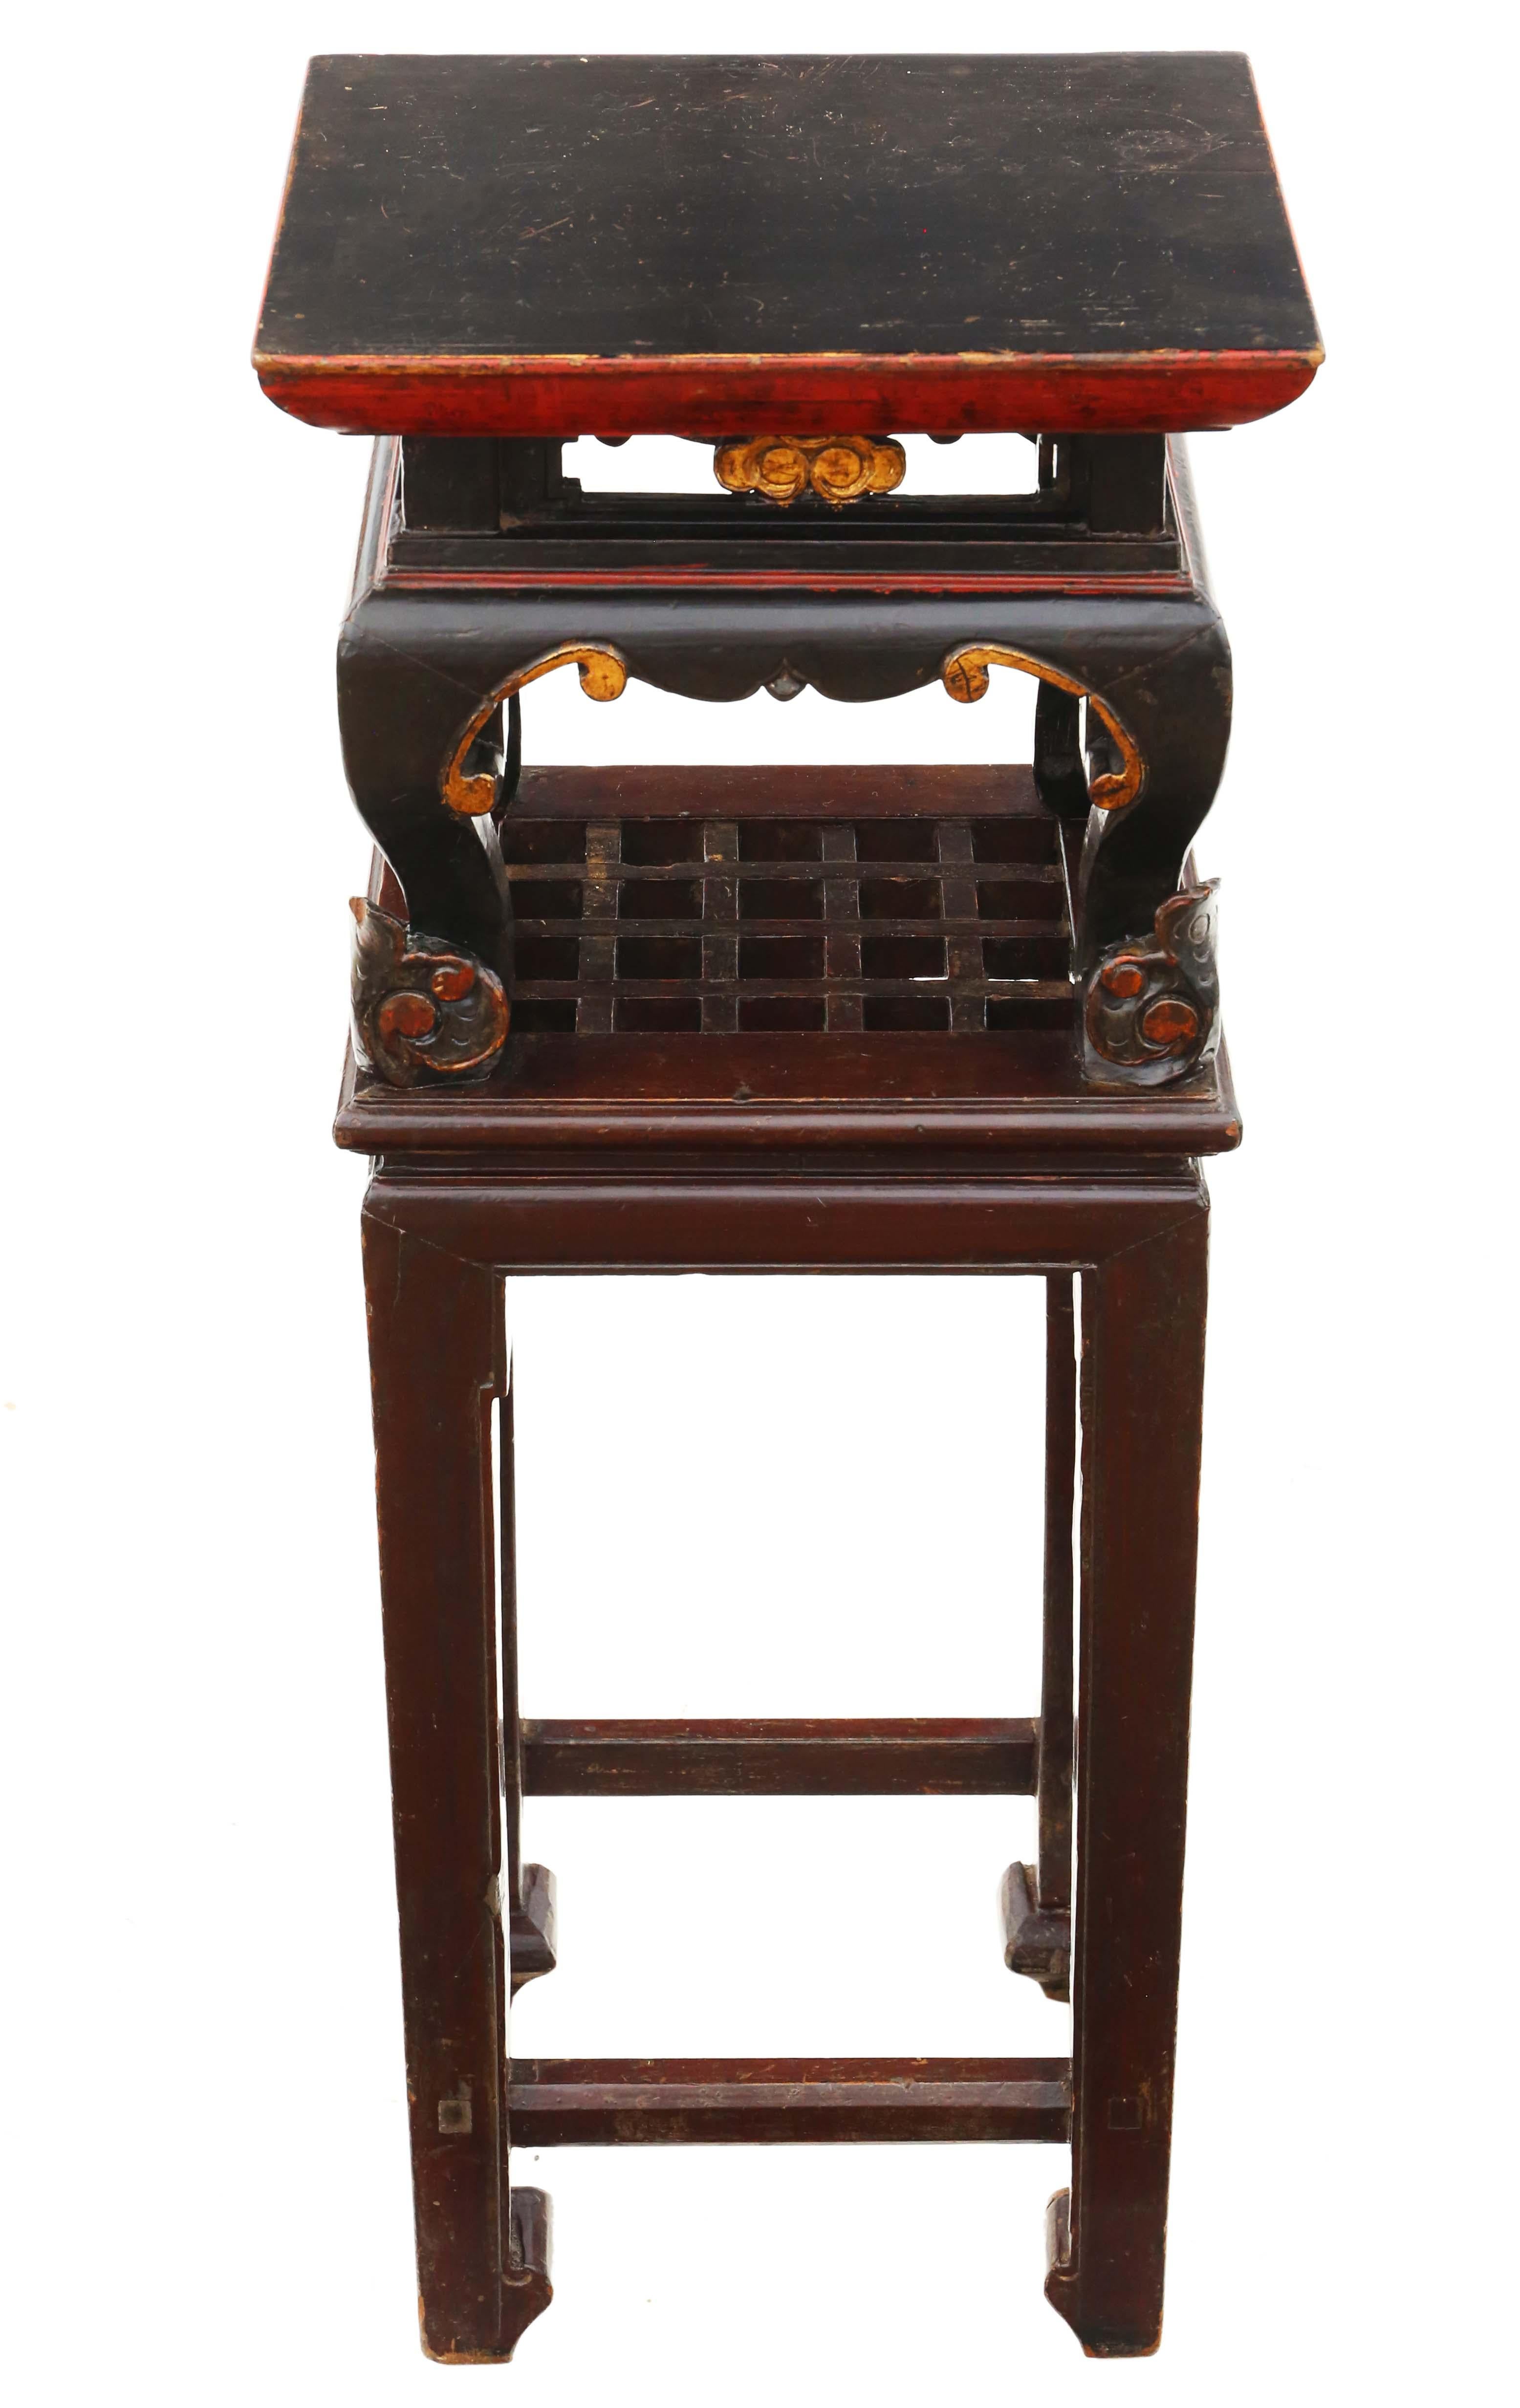 Antiker chinesischer orientalisch bemalter Beistelltisch Stand C1920.

Solide, ohne lose Verbindungen. Ein charmanter Tisch voller Alter und Charakter.

Gute Farbe und Patina.

Kein Holzwurm.

An der richtigen Stelle würde es großartig